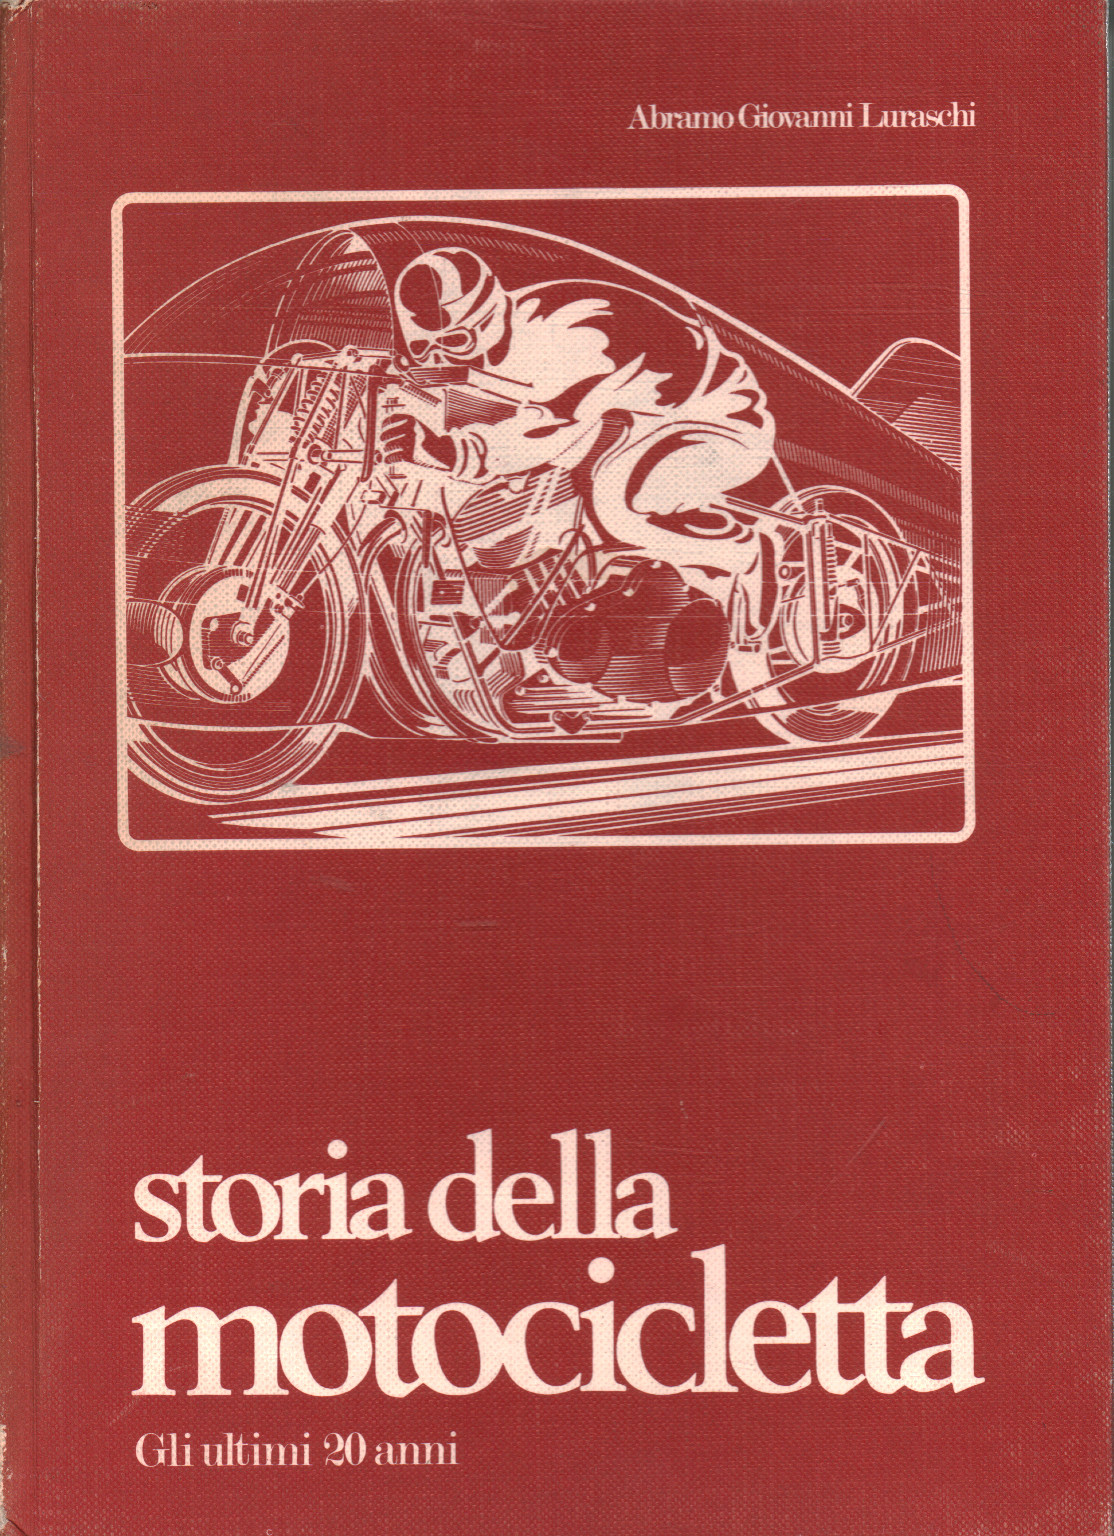 Geschichte des Motorrads. Die letzten 20 Jahre, Abramo Giovanni Luraschi